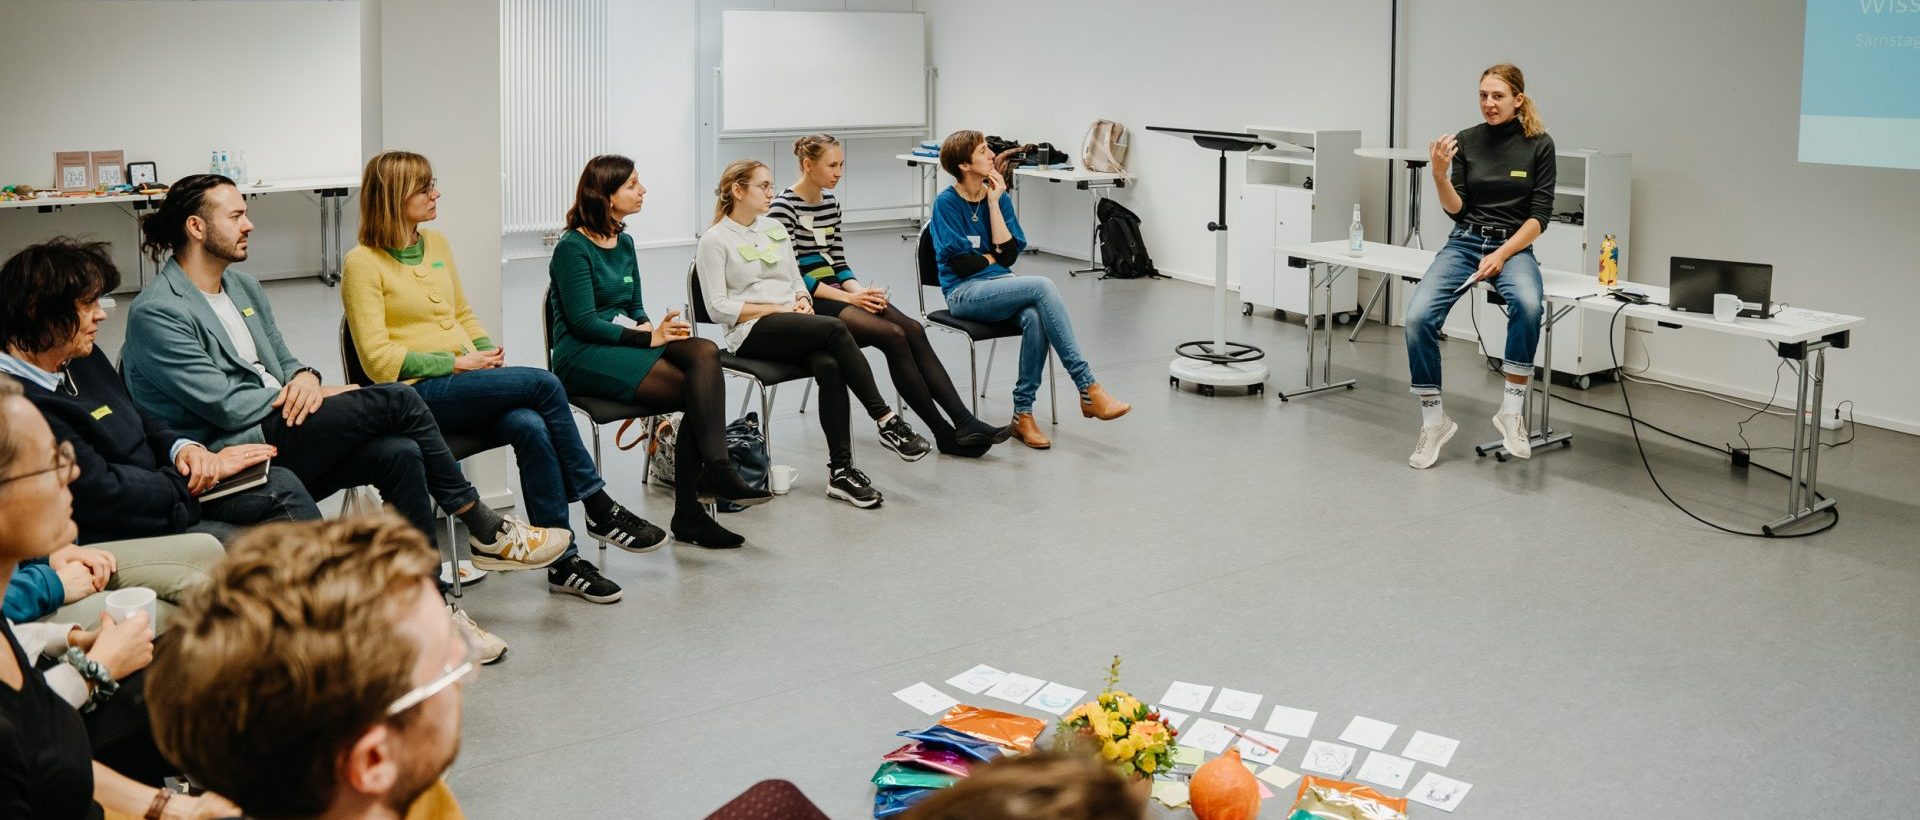 Workshopsituation: Mehrere Menschen sitzen in einem Stuhlreis. Foto: Reimann Fotografen / Alexander Reime